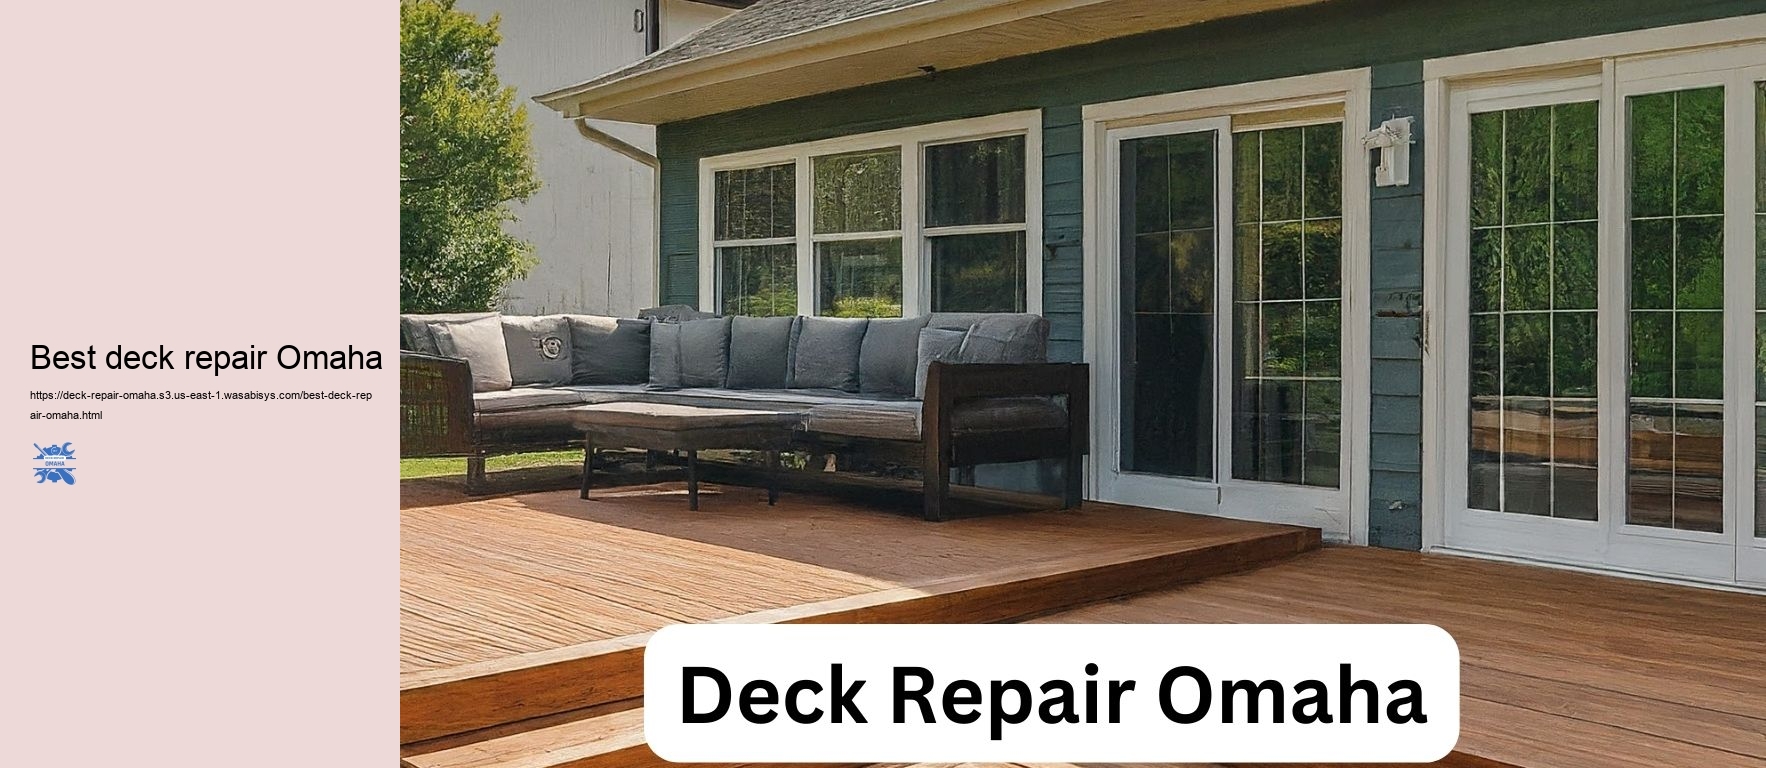 Best deck repair Omaha